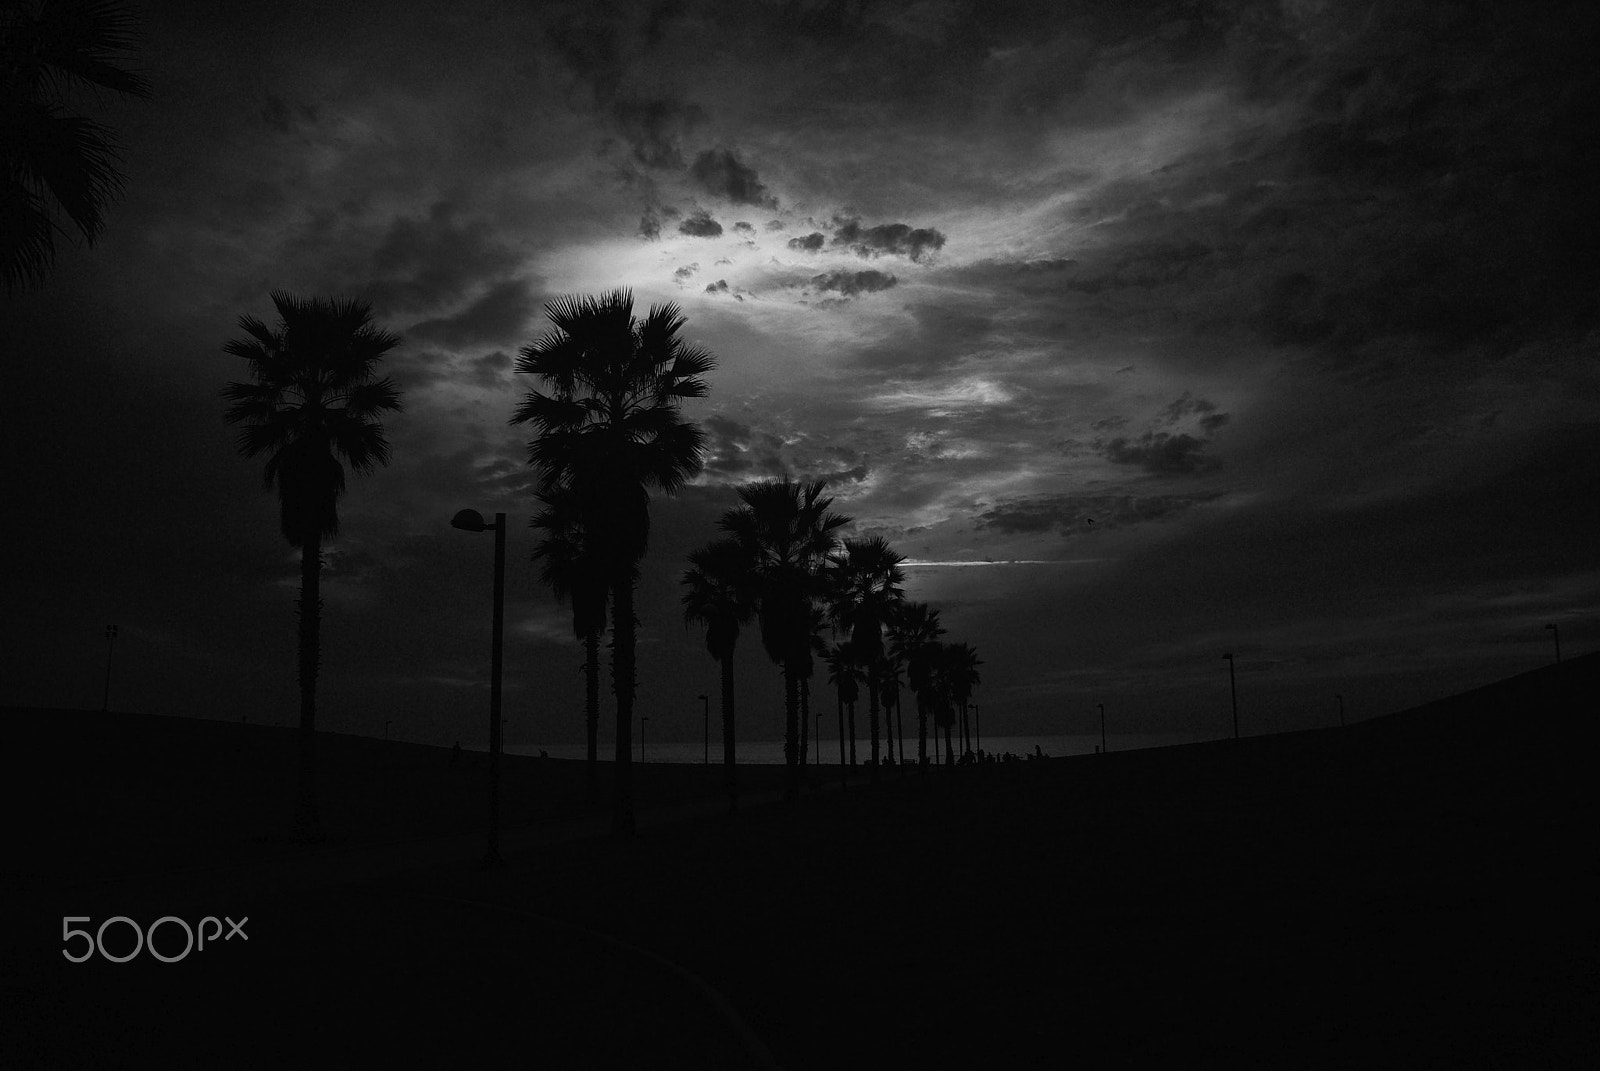 Pentax K-m (K2000) sample photo. Dream desert photography